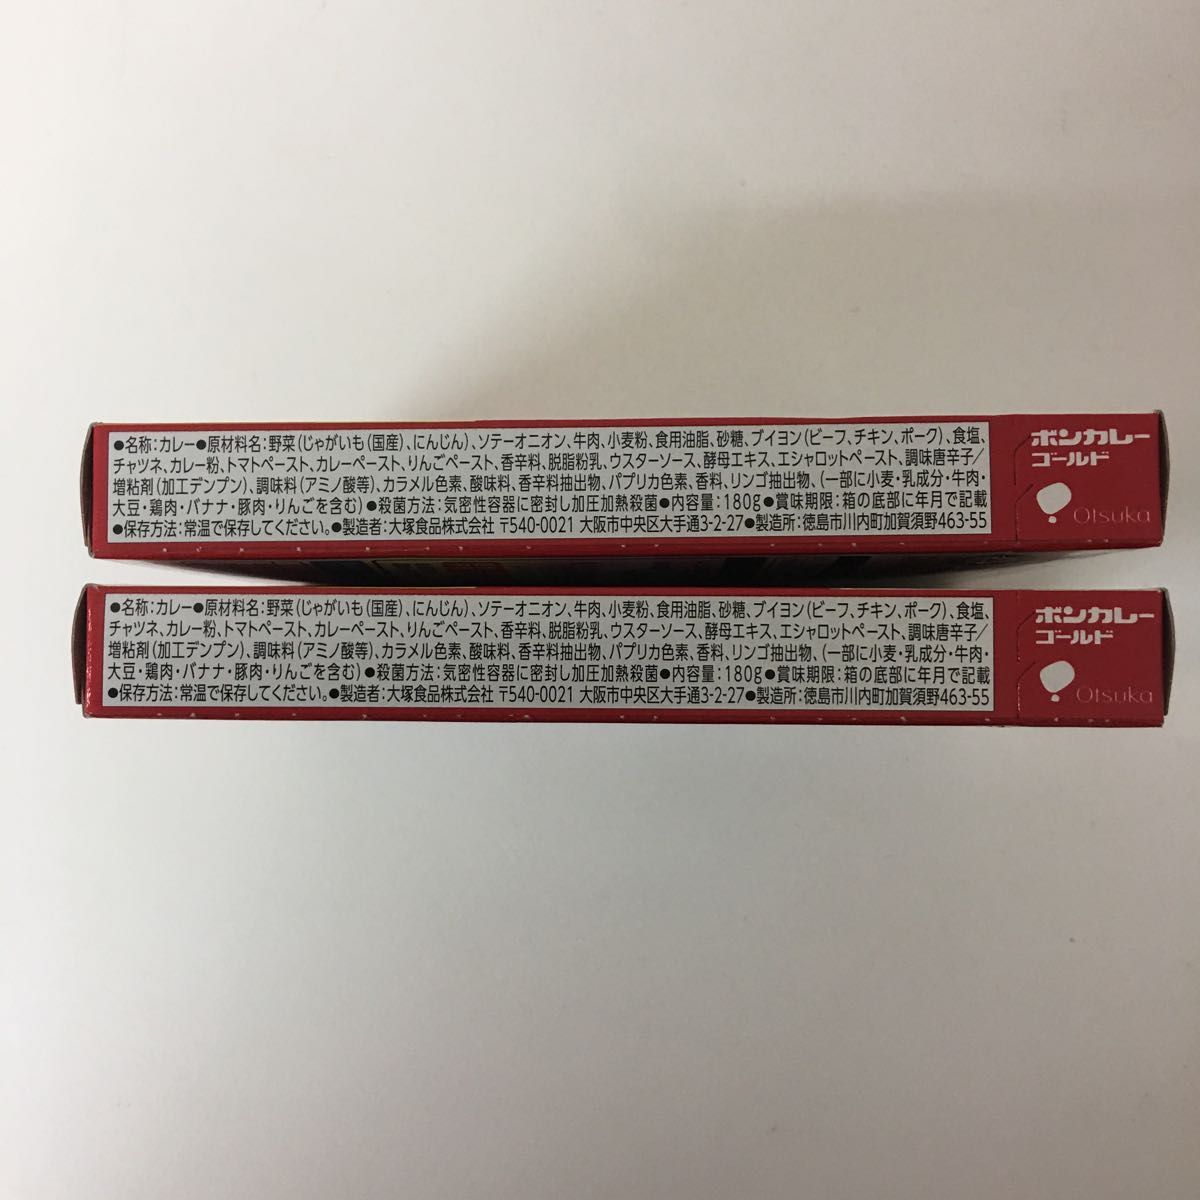 大塚食品 ボンカレーゴールド 【辛口】 180g×2個 レンジ調理対応 